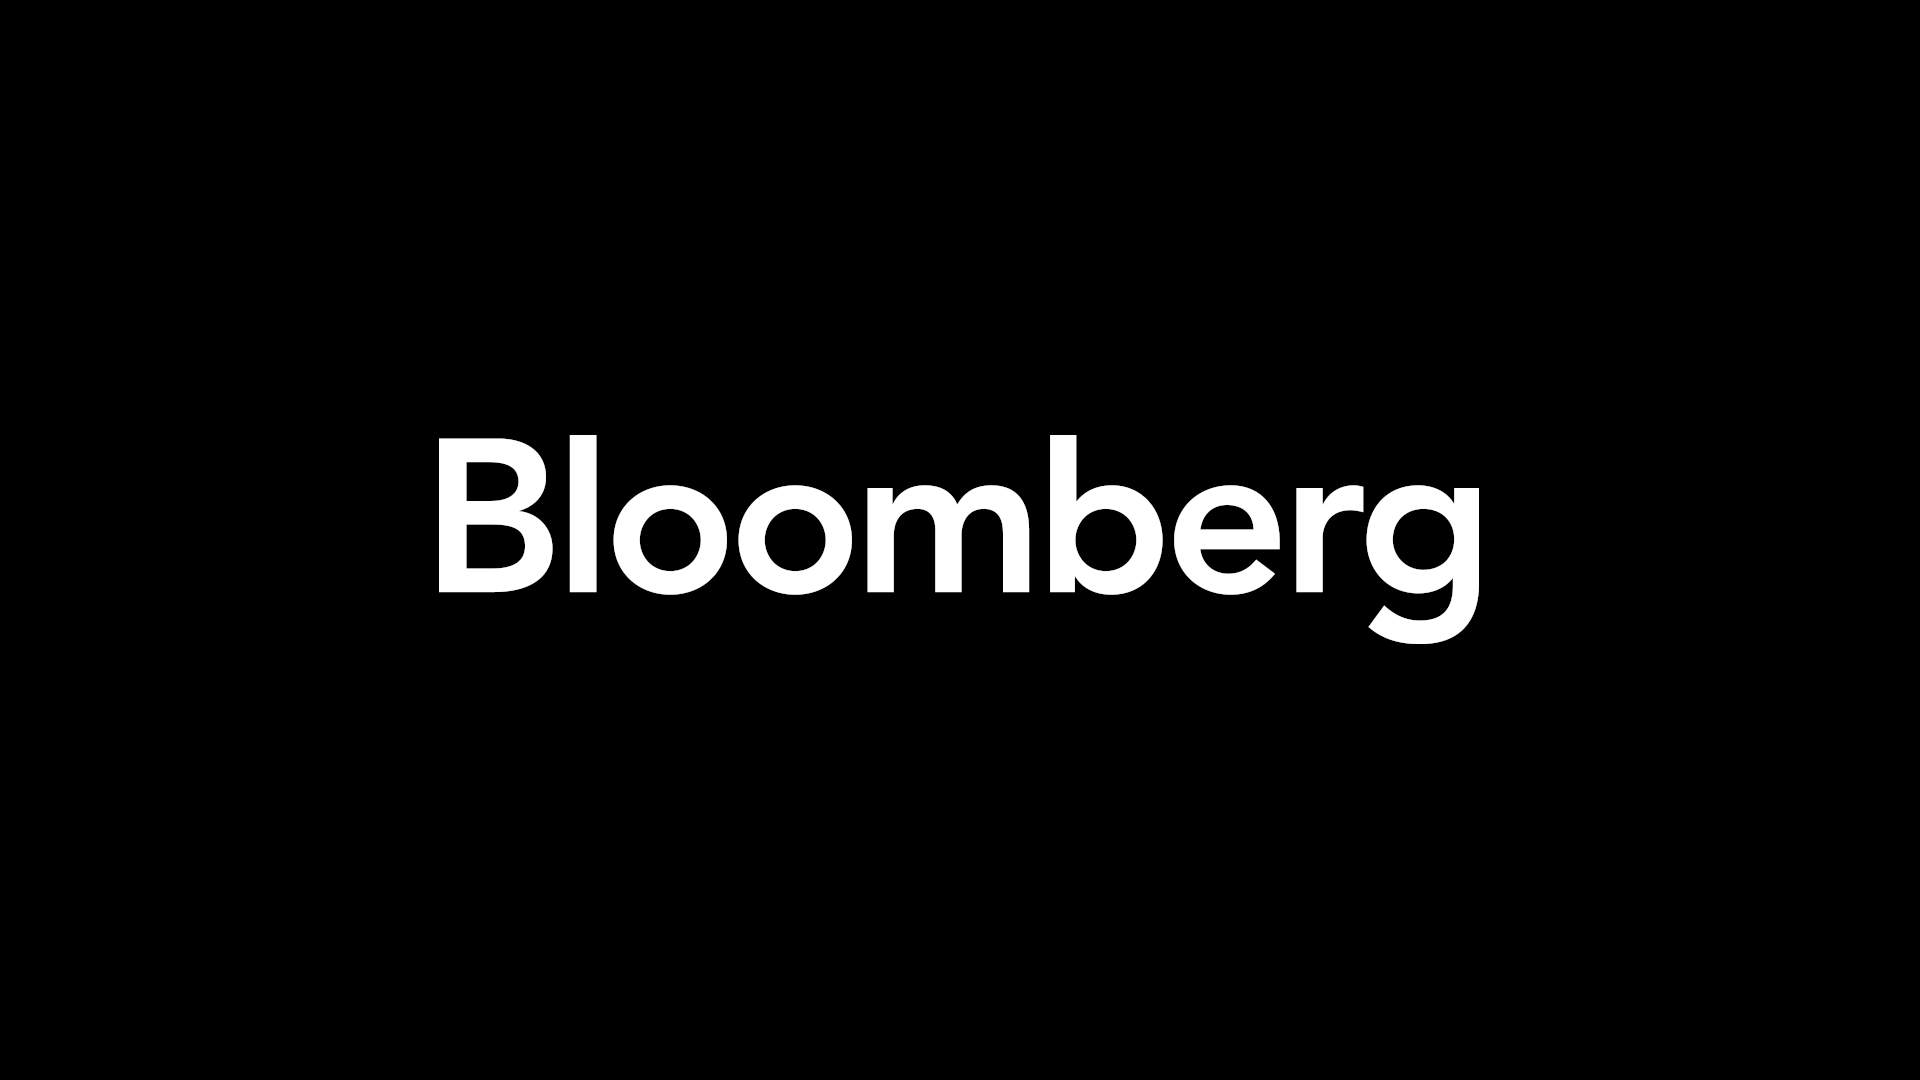 Sotheby’s Investors Sue to Block $2.7 Billion BidFair Offer